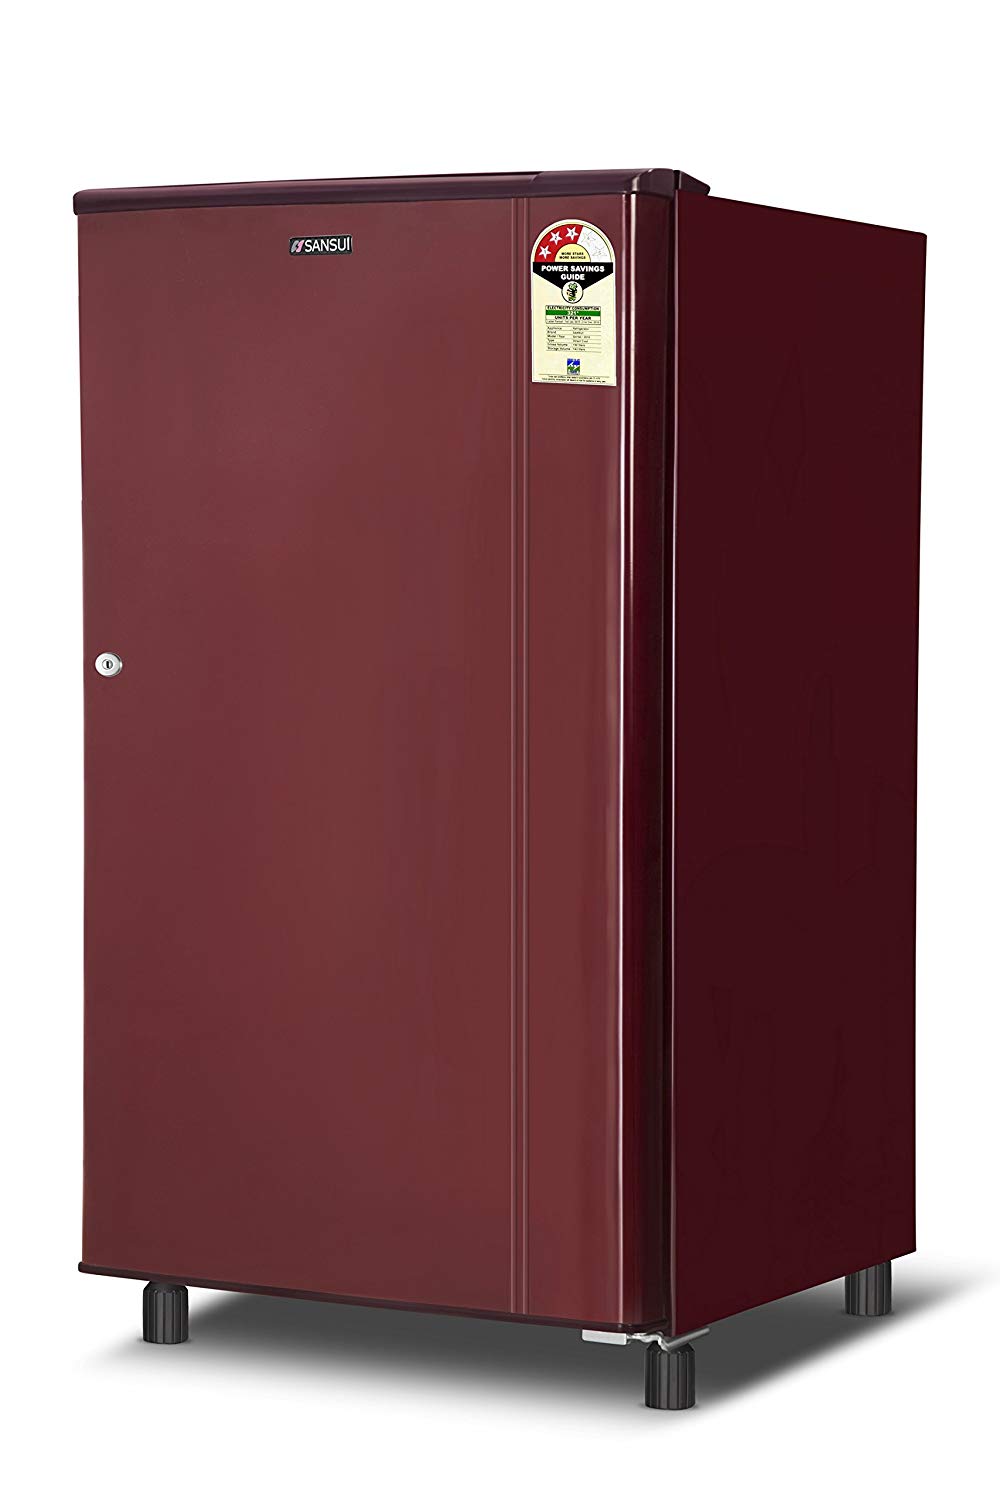 Sansui 200 Litre Double Door Refrigerator SPD200DDS